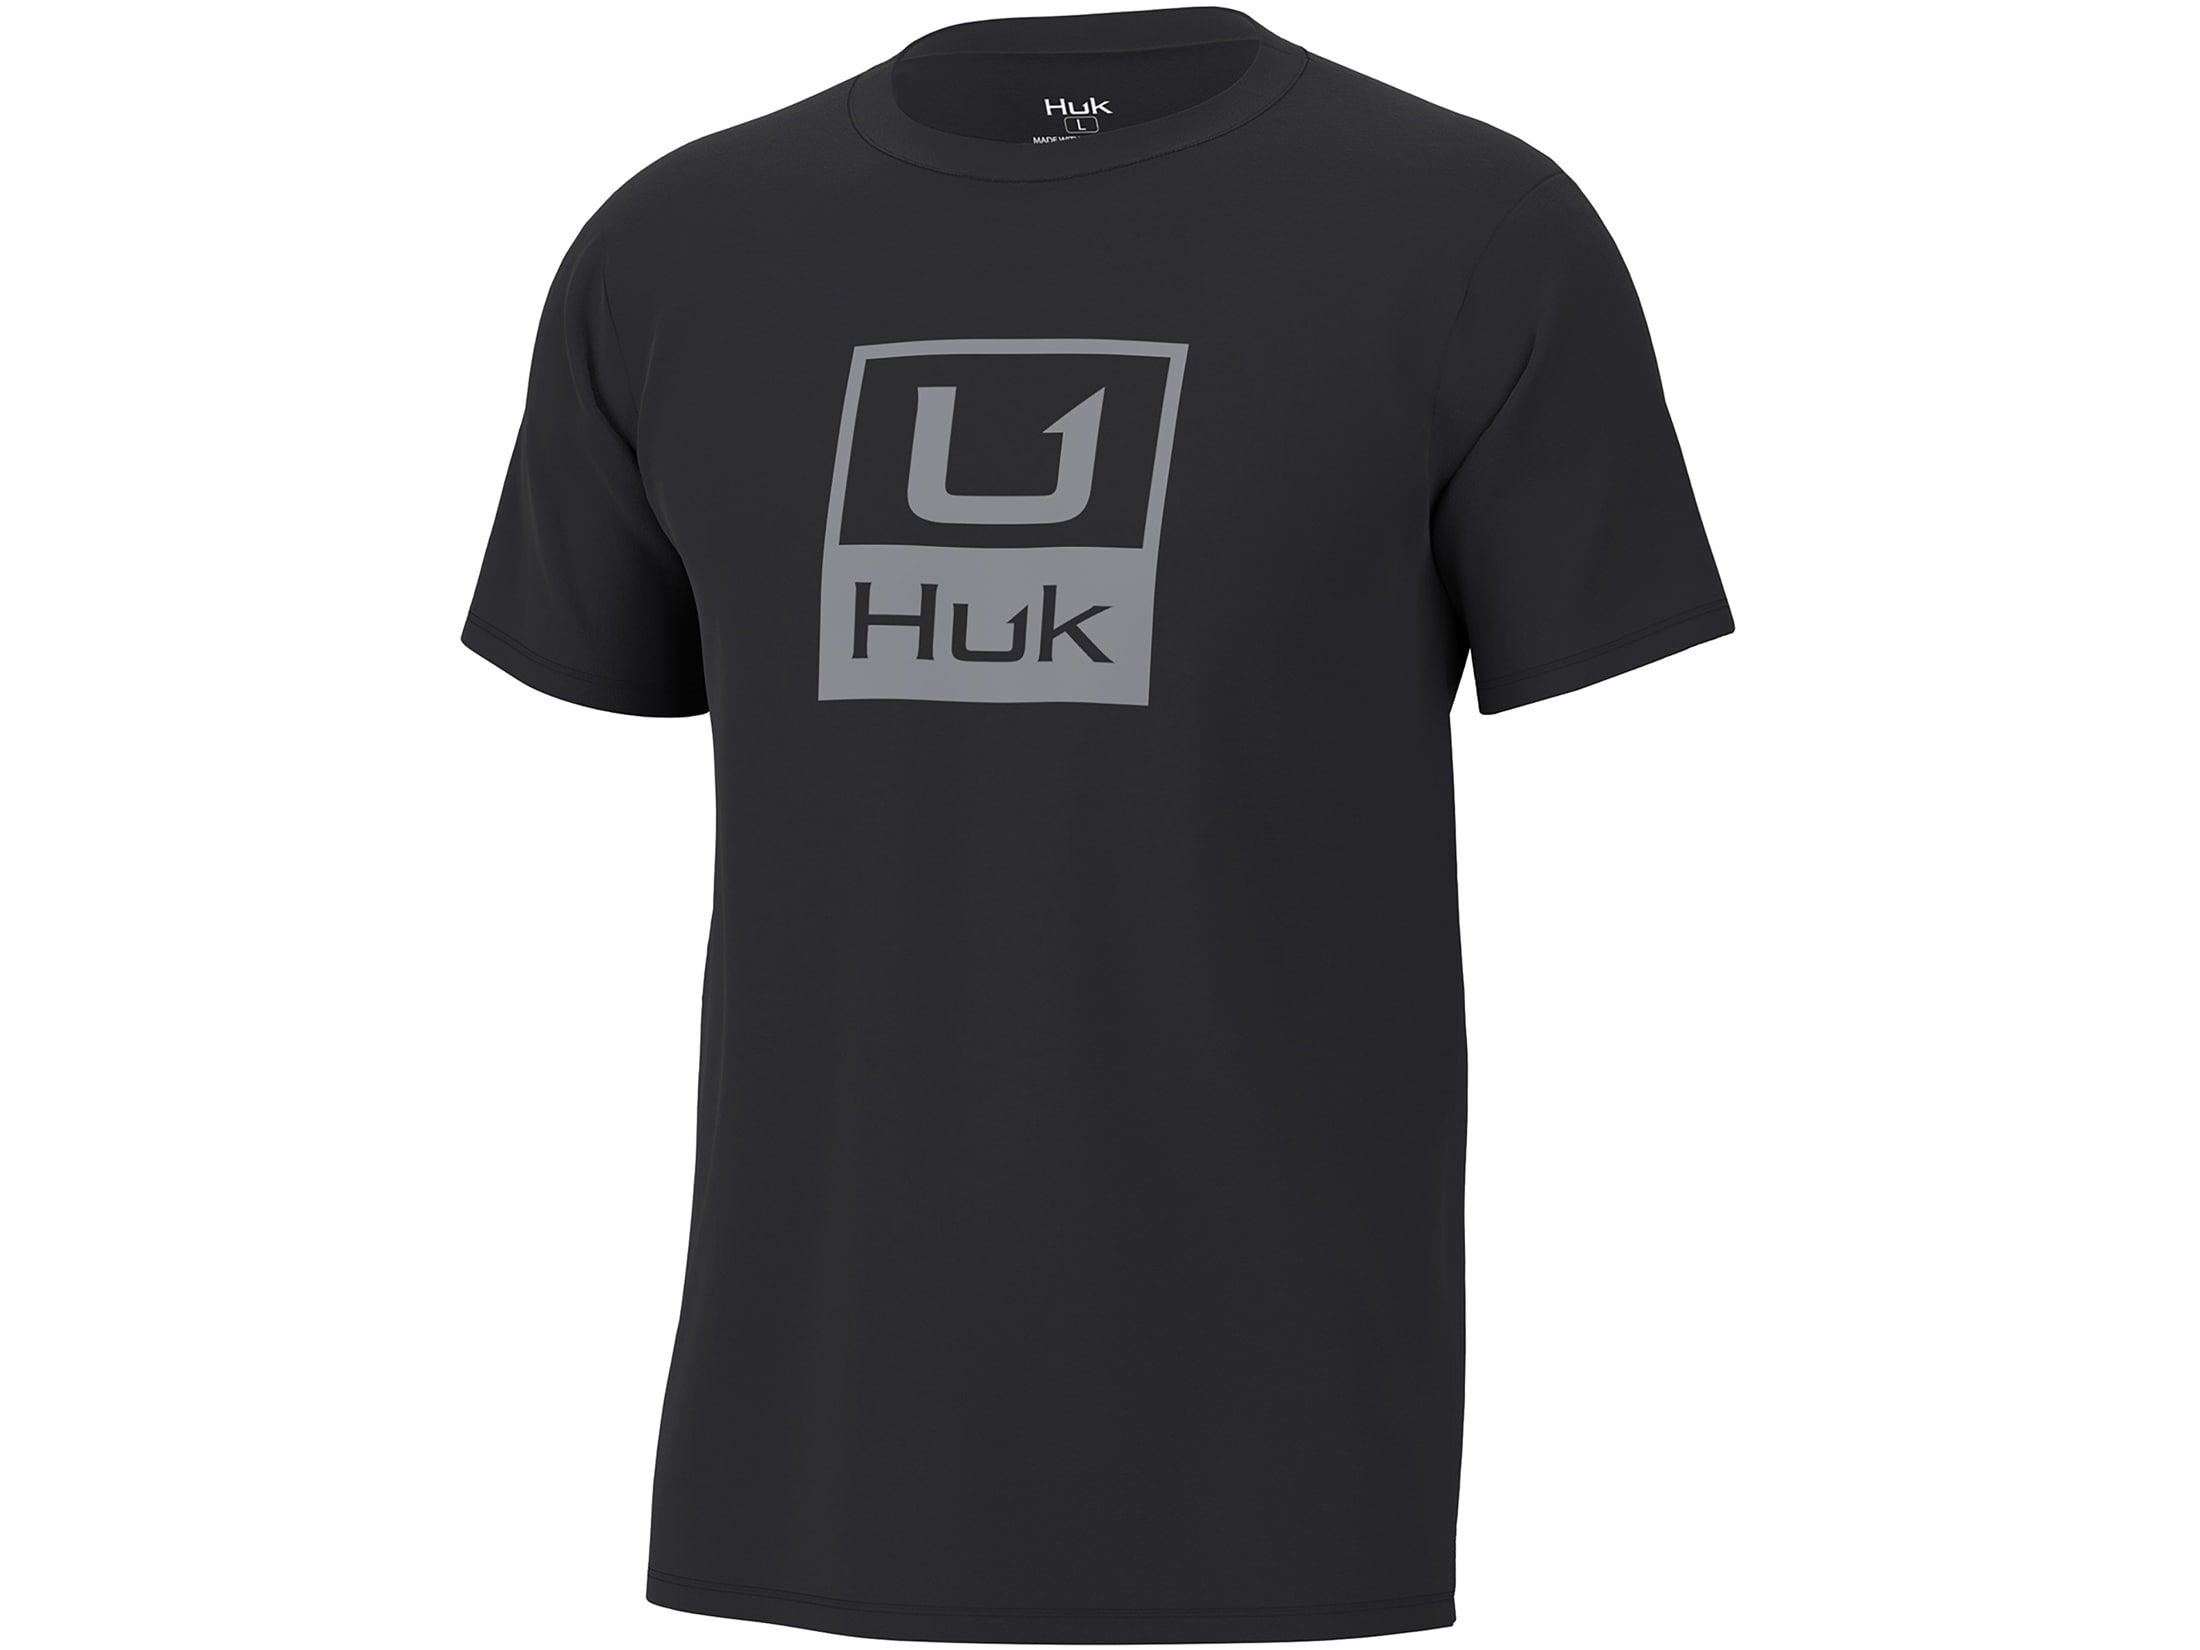 Huk Men's Stacked Logo T-Shirt Black Large